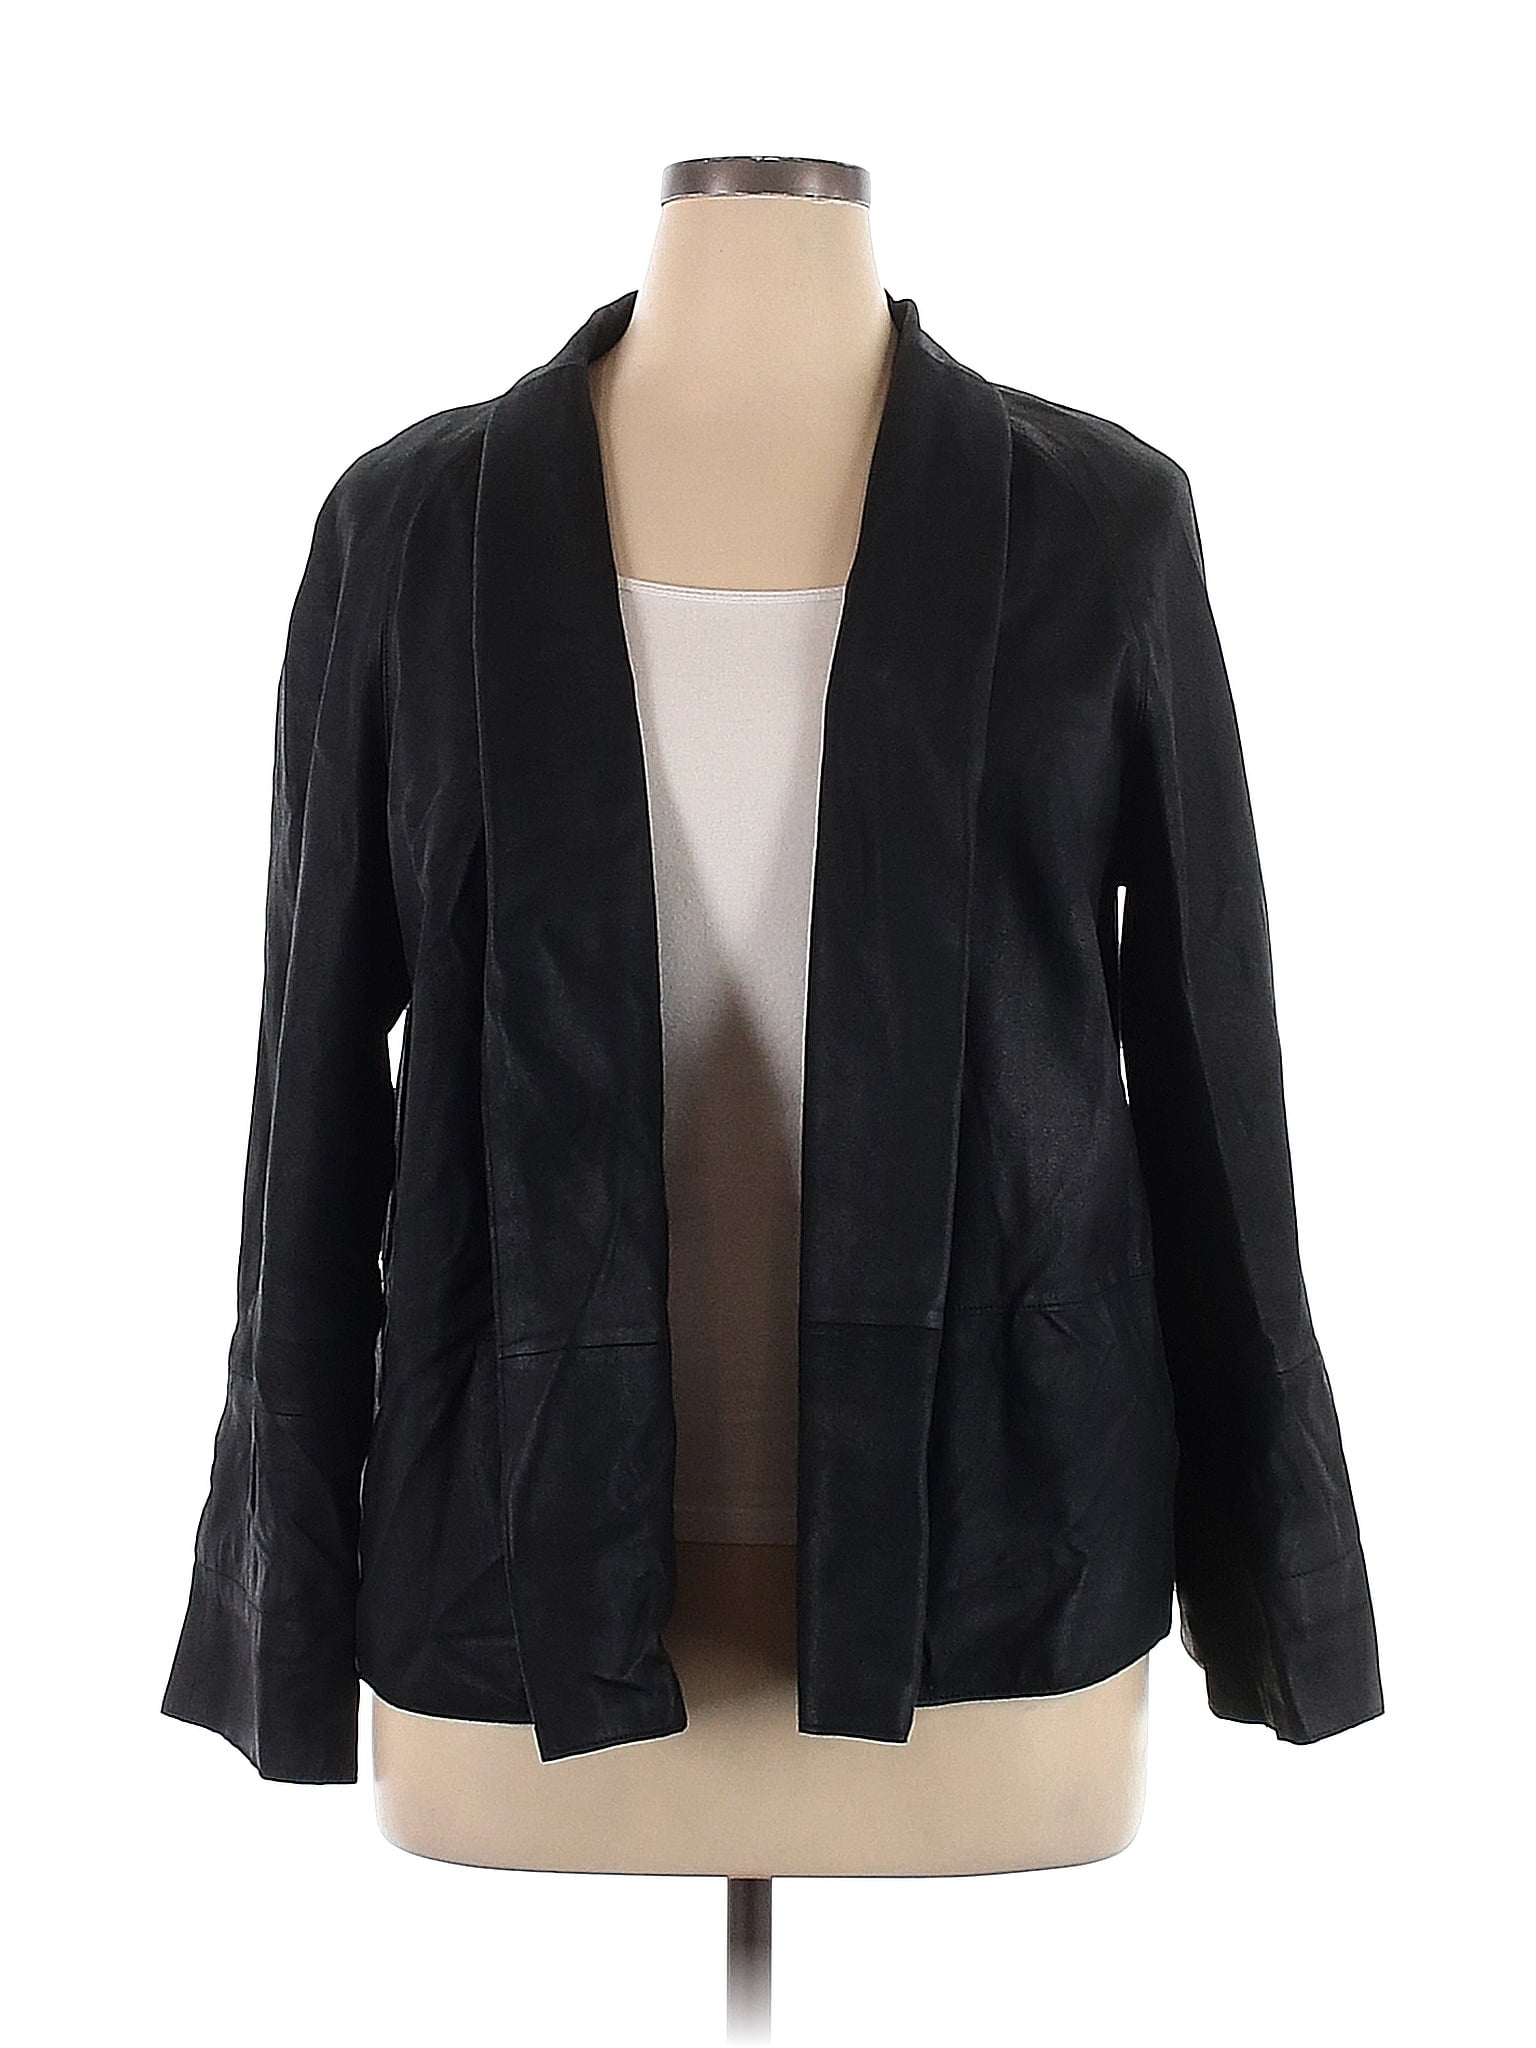 Doncaster Solid Black Jacket Size 14 - 85% off | thredUP